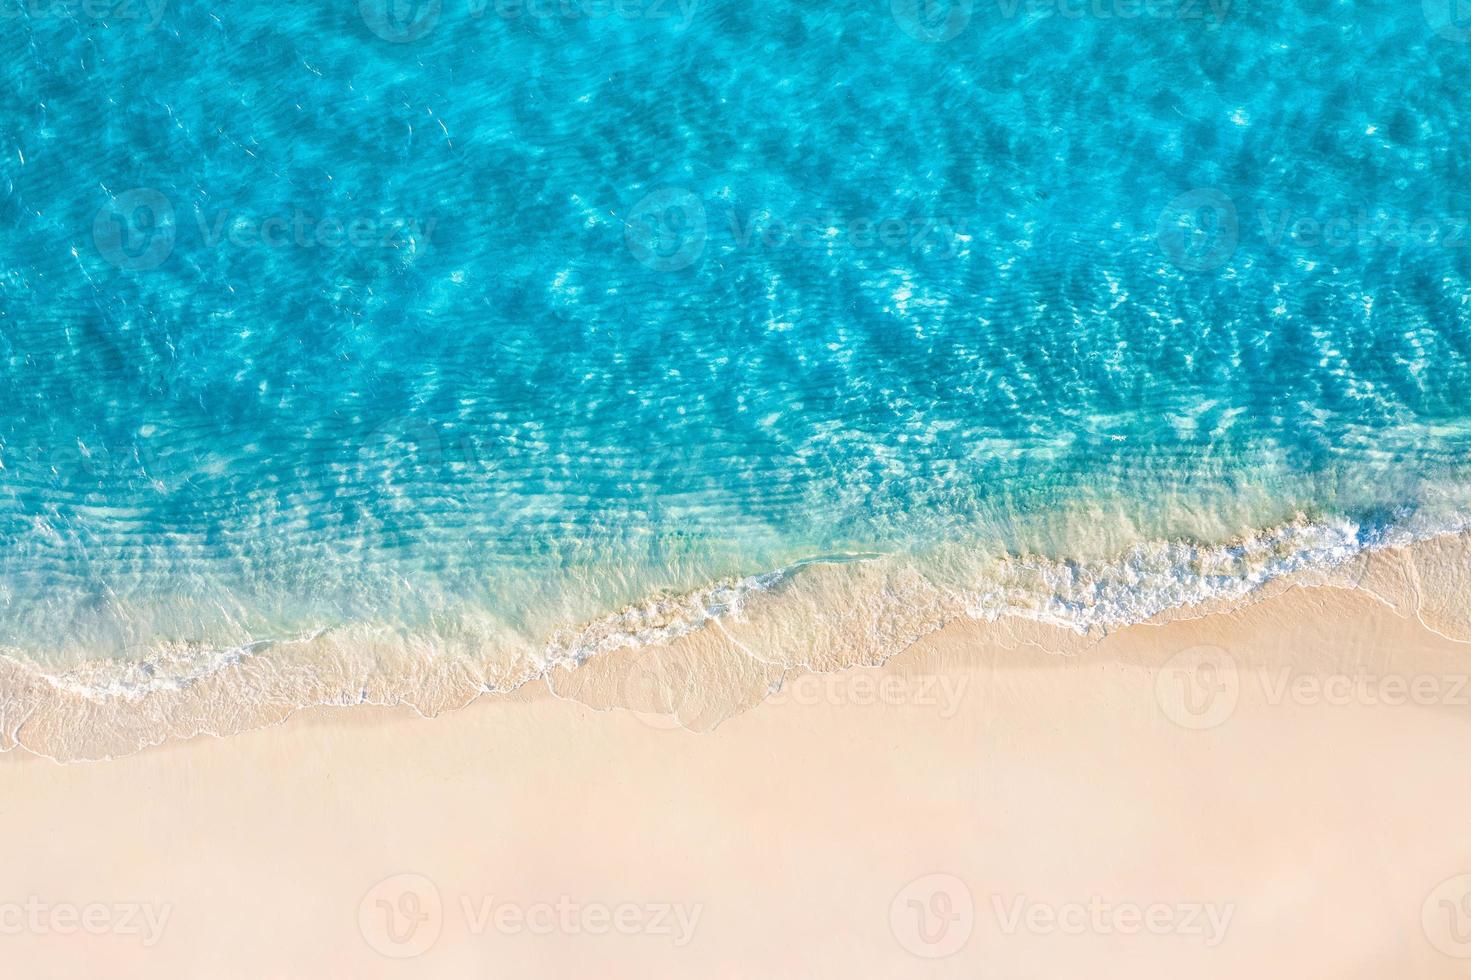 rilassante scena aerea della spiaggia, banner modello vacanze vacanze estive. onde surf con incredibile laguna blu dell'oceano, riva del mare, costa. perfetta vista dall'alto del drone aereo. tranquilla spiaggia luminosa, mare foto